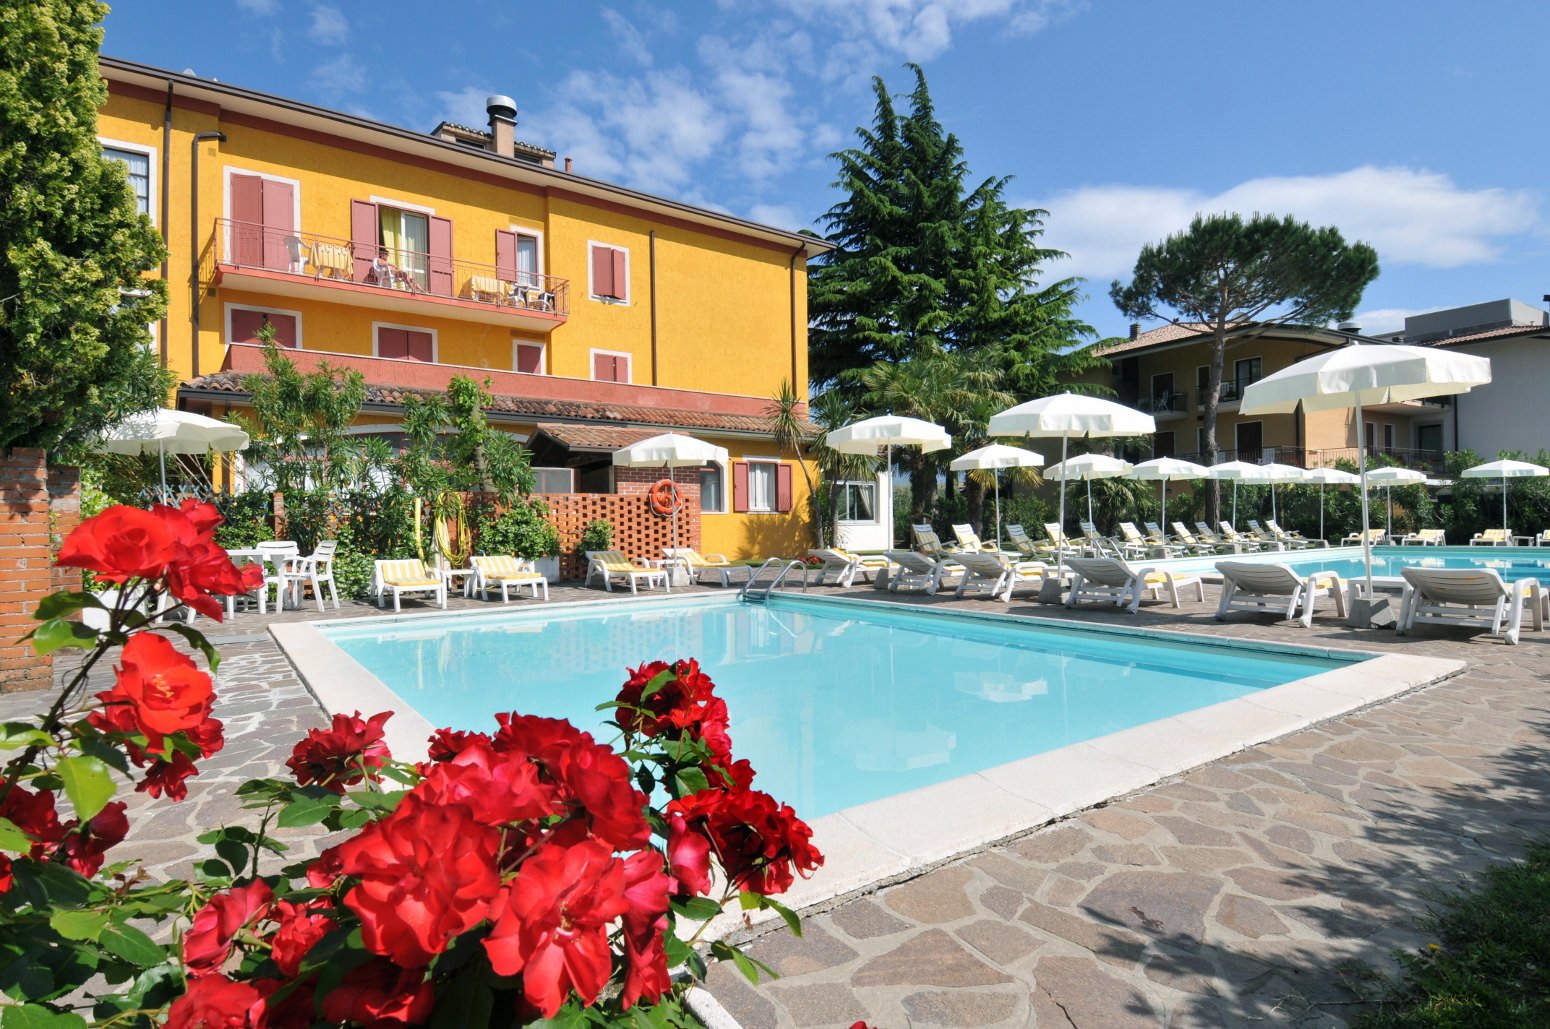 La_Quiete_Park_Hotel_Manerba_del_Garda.jpg